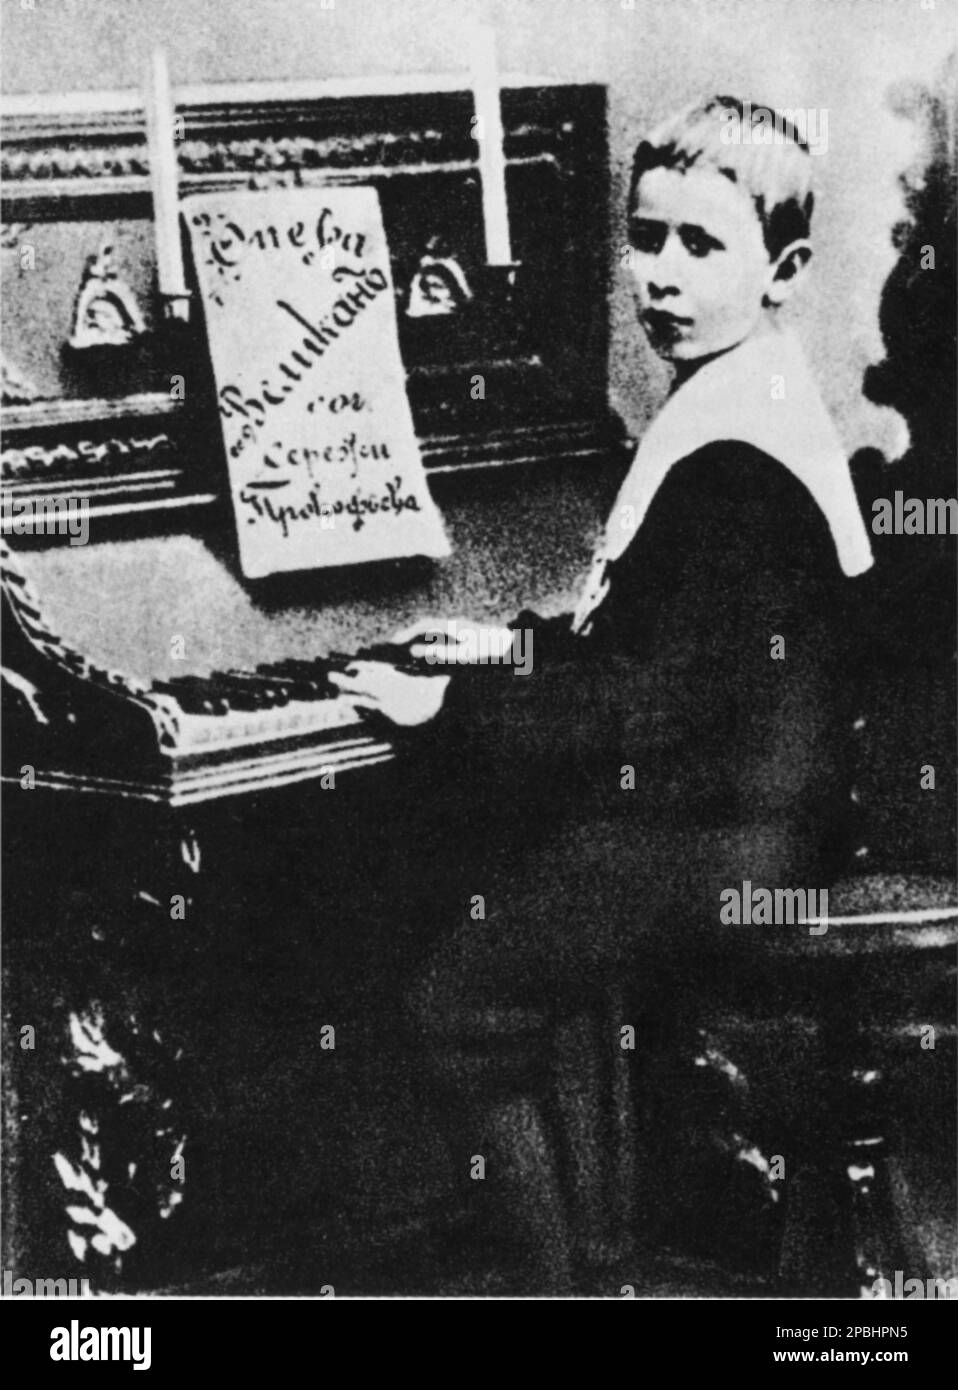 1900 : le compositeur russe SERGEJ PROKOFIEV ( Sergej Serguevic Prokof'ev, 1891 - 1953 ) âgé de 9 ans avec la partition de musique de son simphony LE GÉANT . Prokofiev était un compositeur russe qui maîtrise de nombreux genres musicaux et est venu à être admiré comme l'un des plus grands compositeurs du 20th siècle - Sergej Sergeïjevic Prokofjev , Sergei , Sergueï ou Serge et Prokofief Prokofiev Prokofieff - bambino - enfant - enfants - bambini - personalita' da giovane giovani - personnalité quand était jeune - COMPOSIORE - OPERA LIRICA - CLASSICA - CLASSIQUE - PORTRAIT - RITRATTO - M Banque D'Images